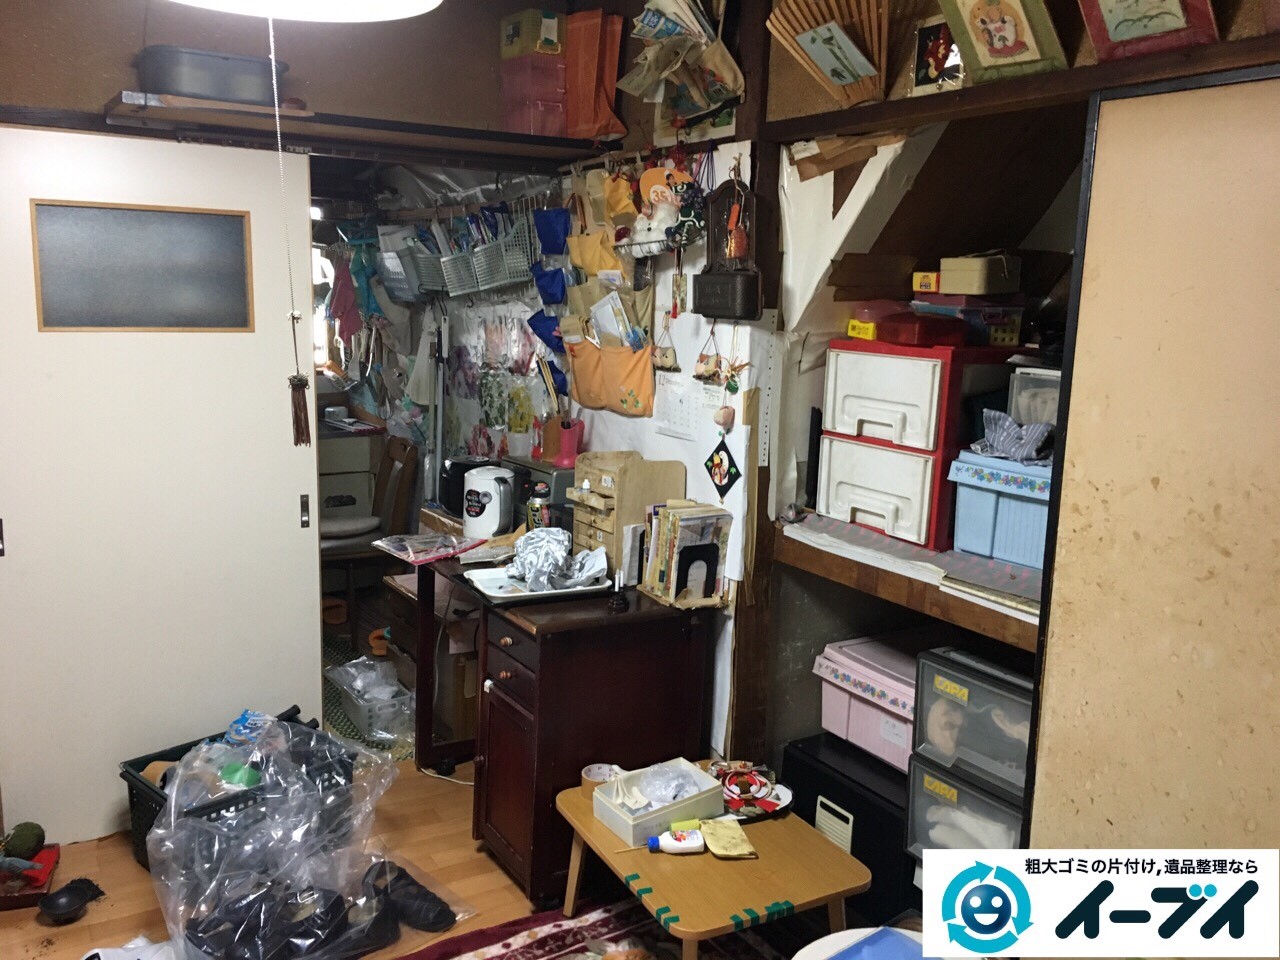 2017年2月6日大阪府東大阪市で遺品整理に伴い家具処分や生活用品の粗大ゴミを処分しました。写真7